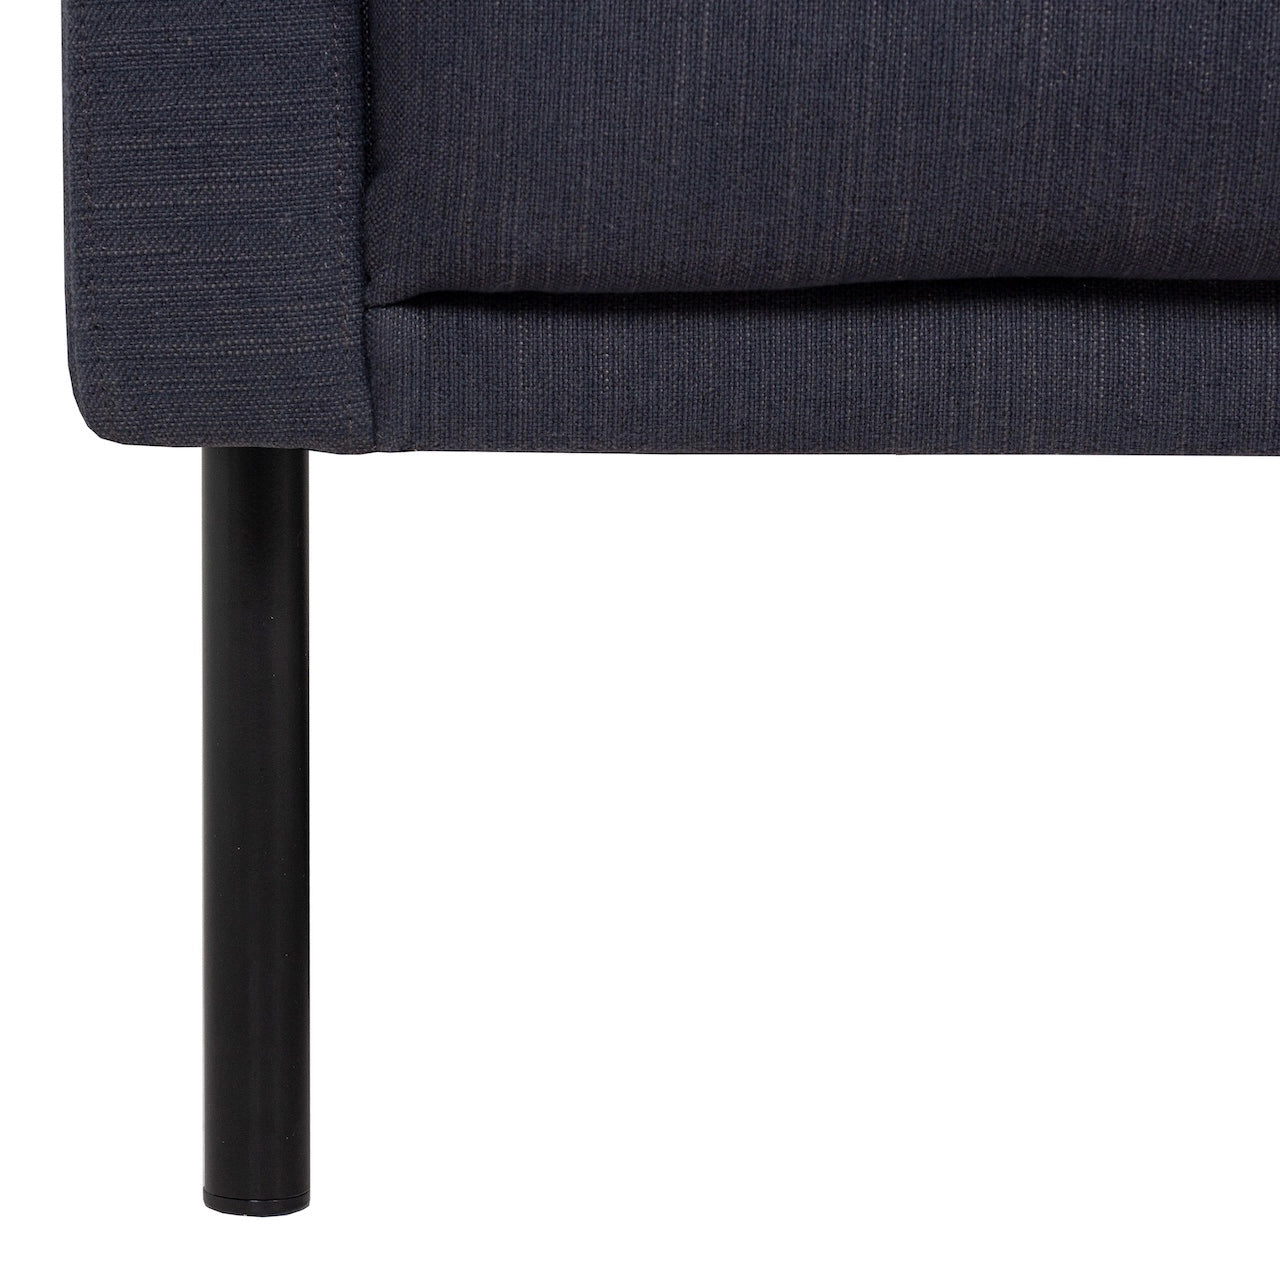 Furniture To Go Larvik 2.5 Seater Sofa - Anthracite, Black Legs